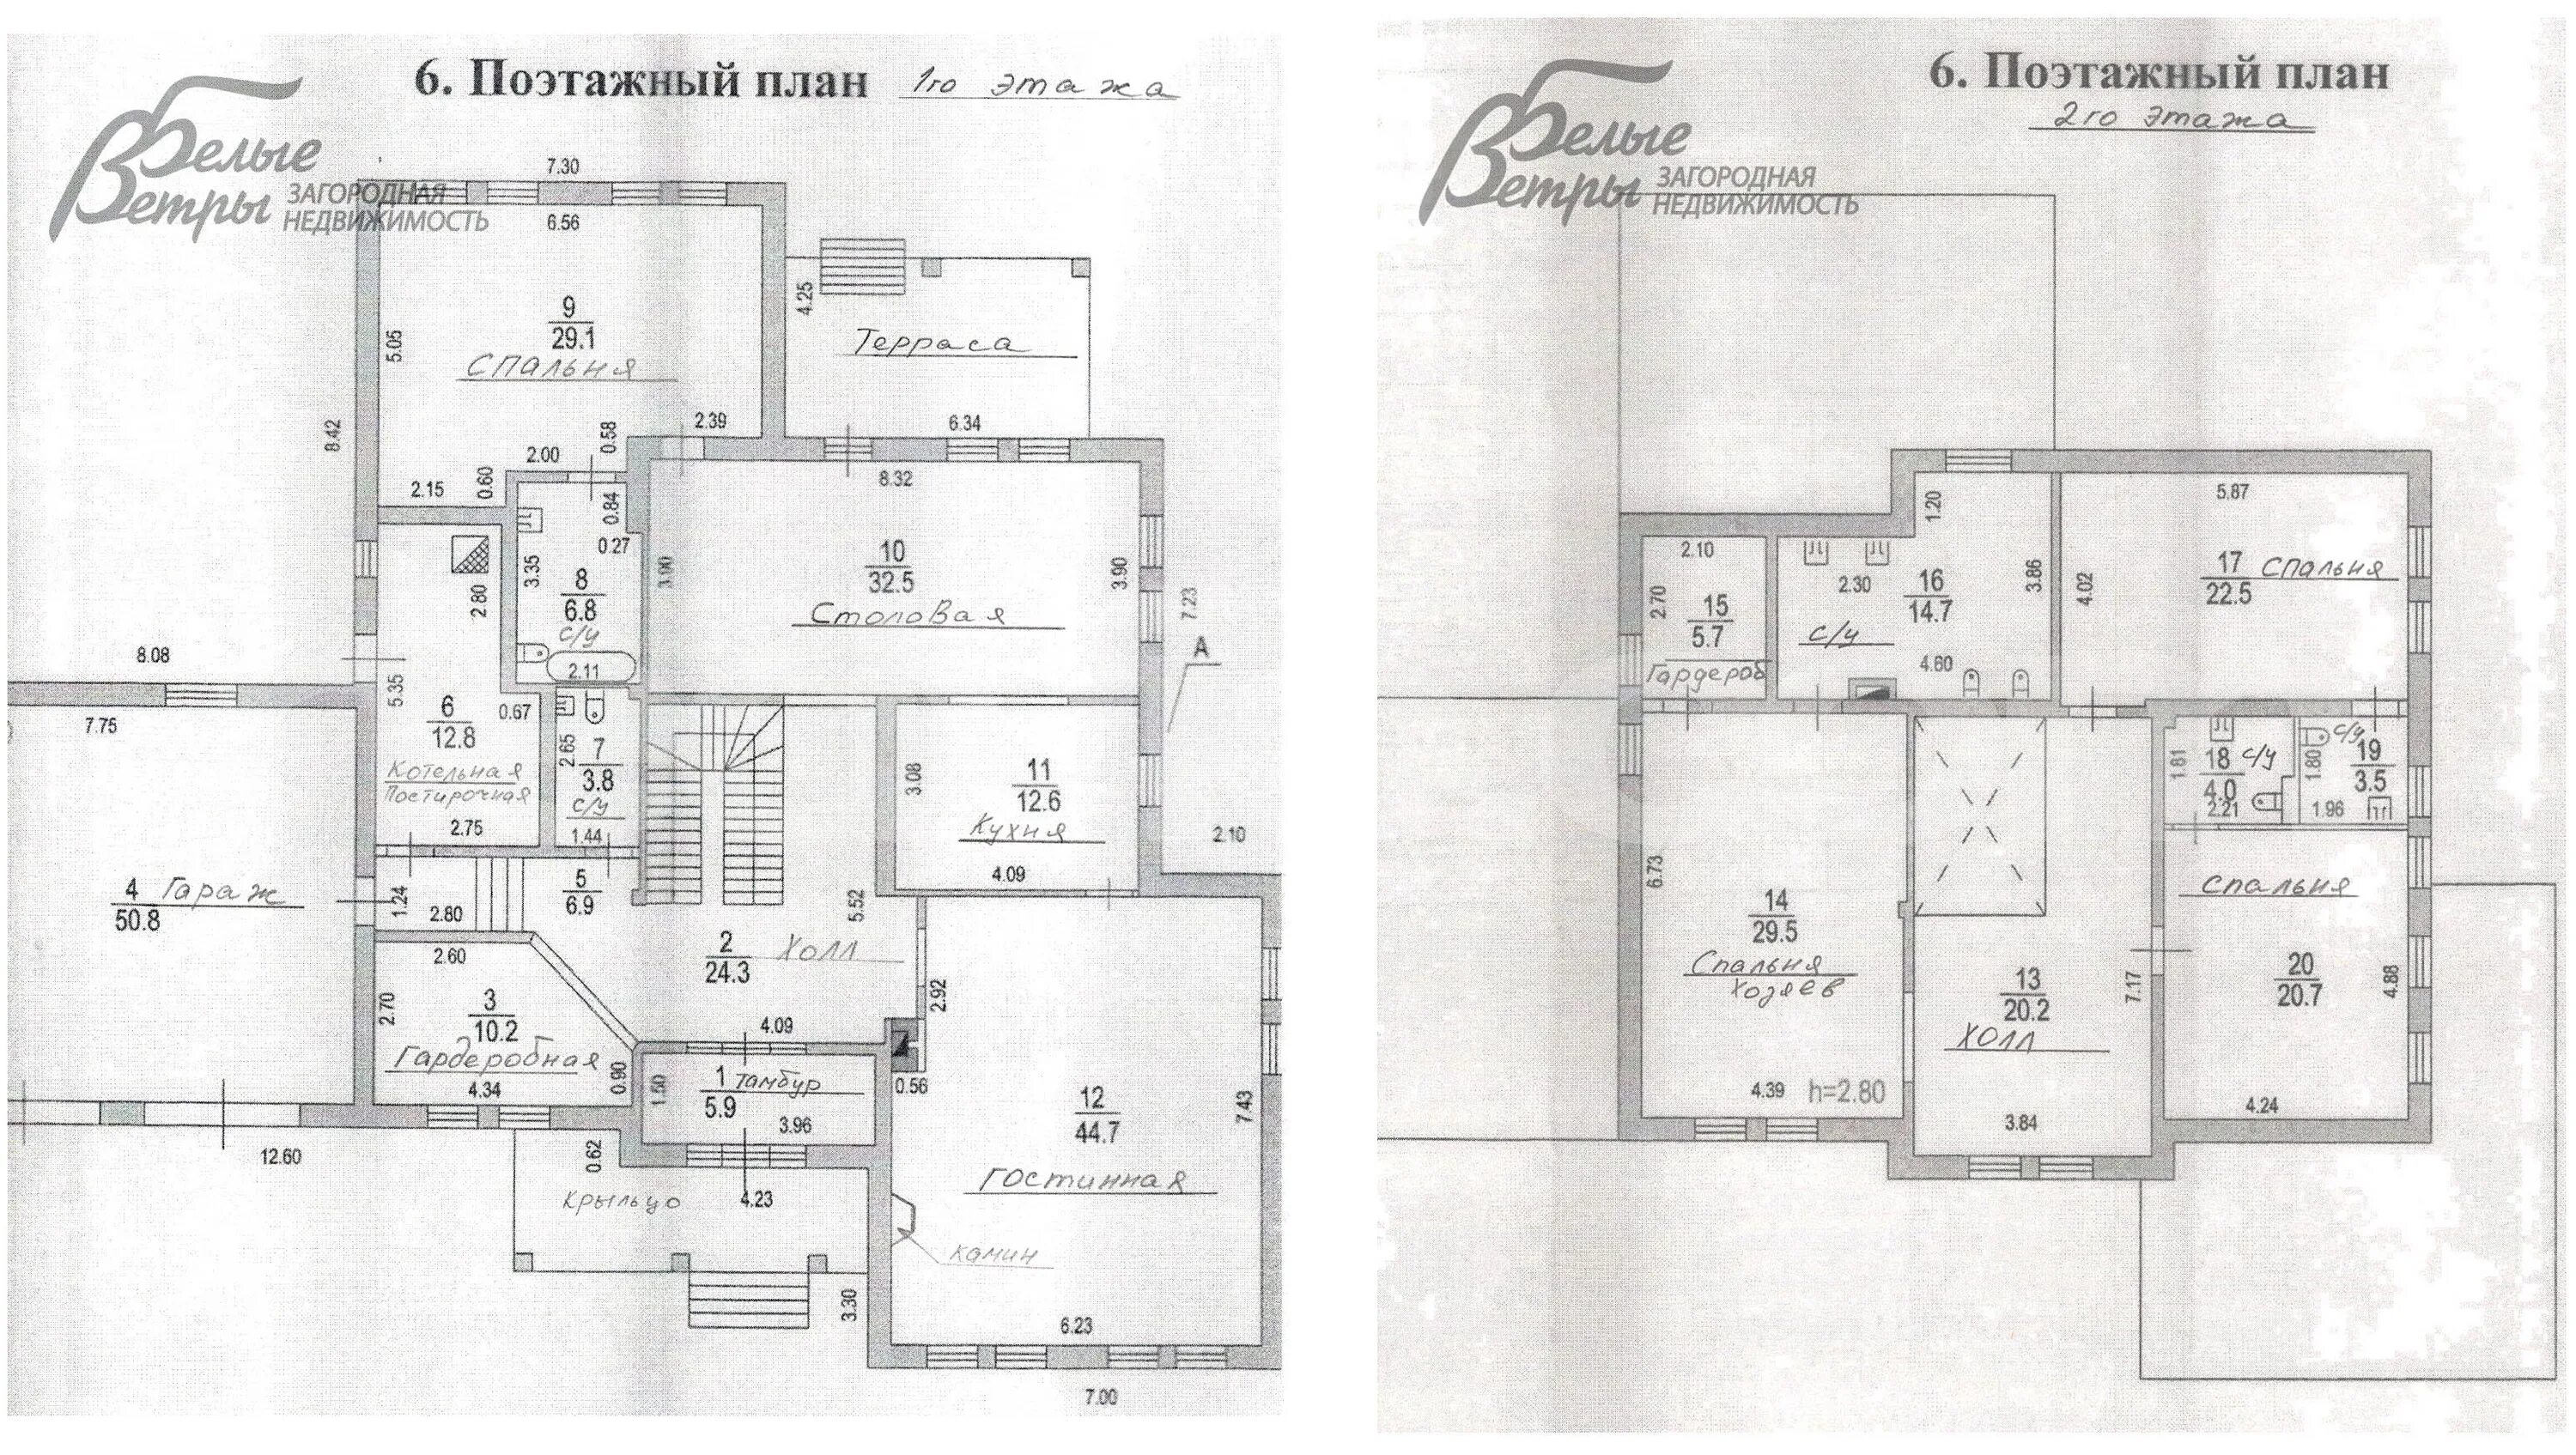 4 комнатная краснодар. Поэтажный план дома. Атмосфера Иркутск поэтажный план. Счастье в Кусково поэтажные планы.